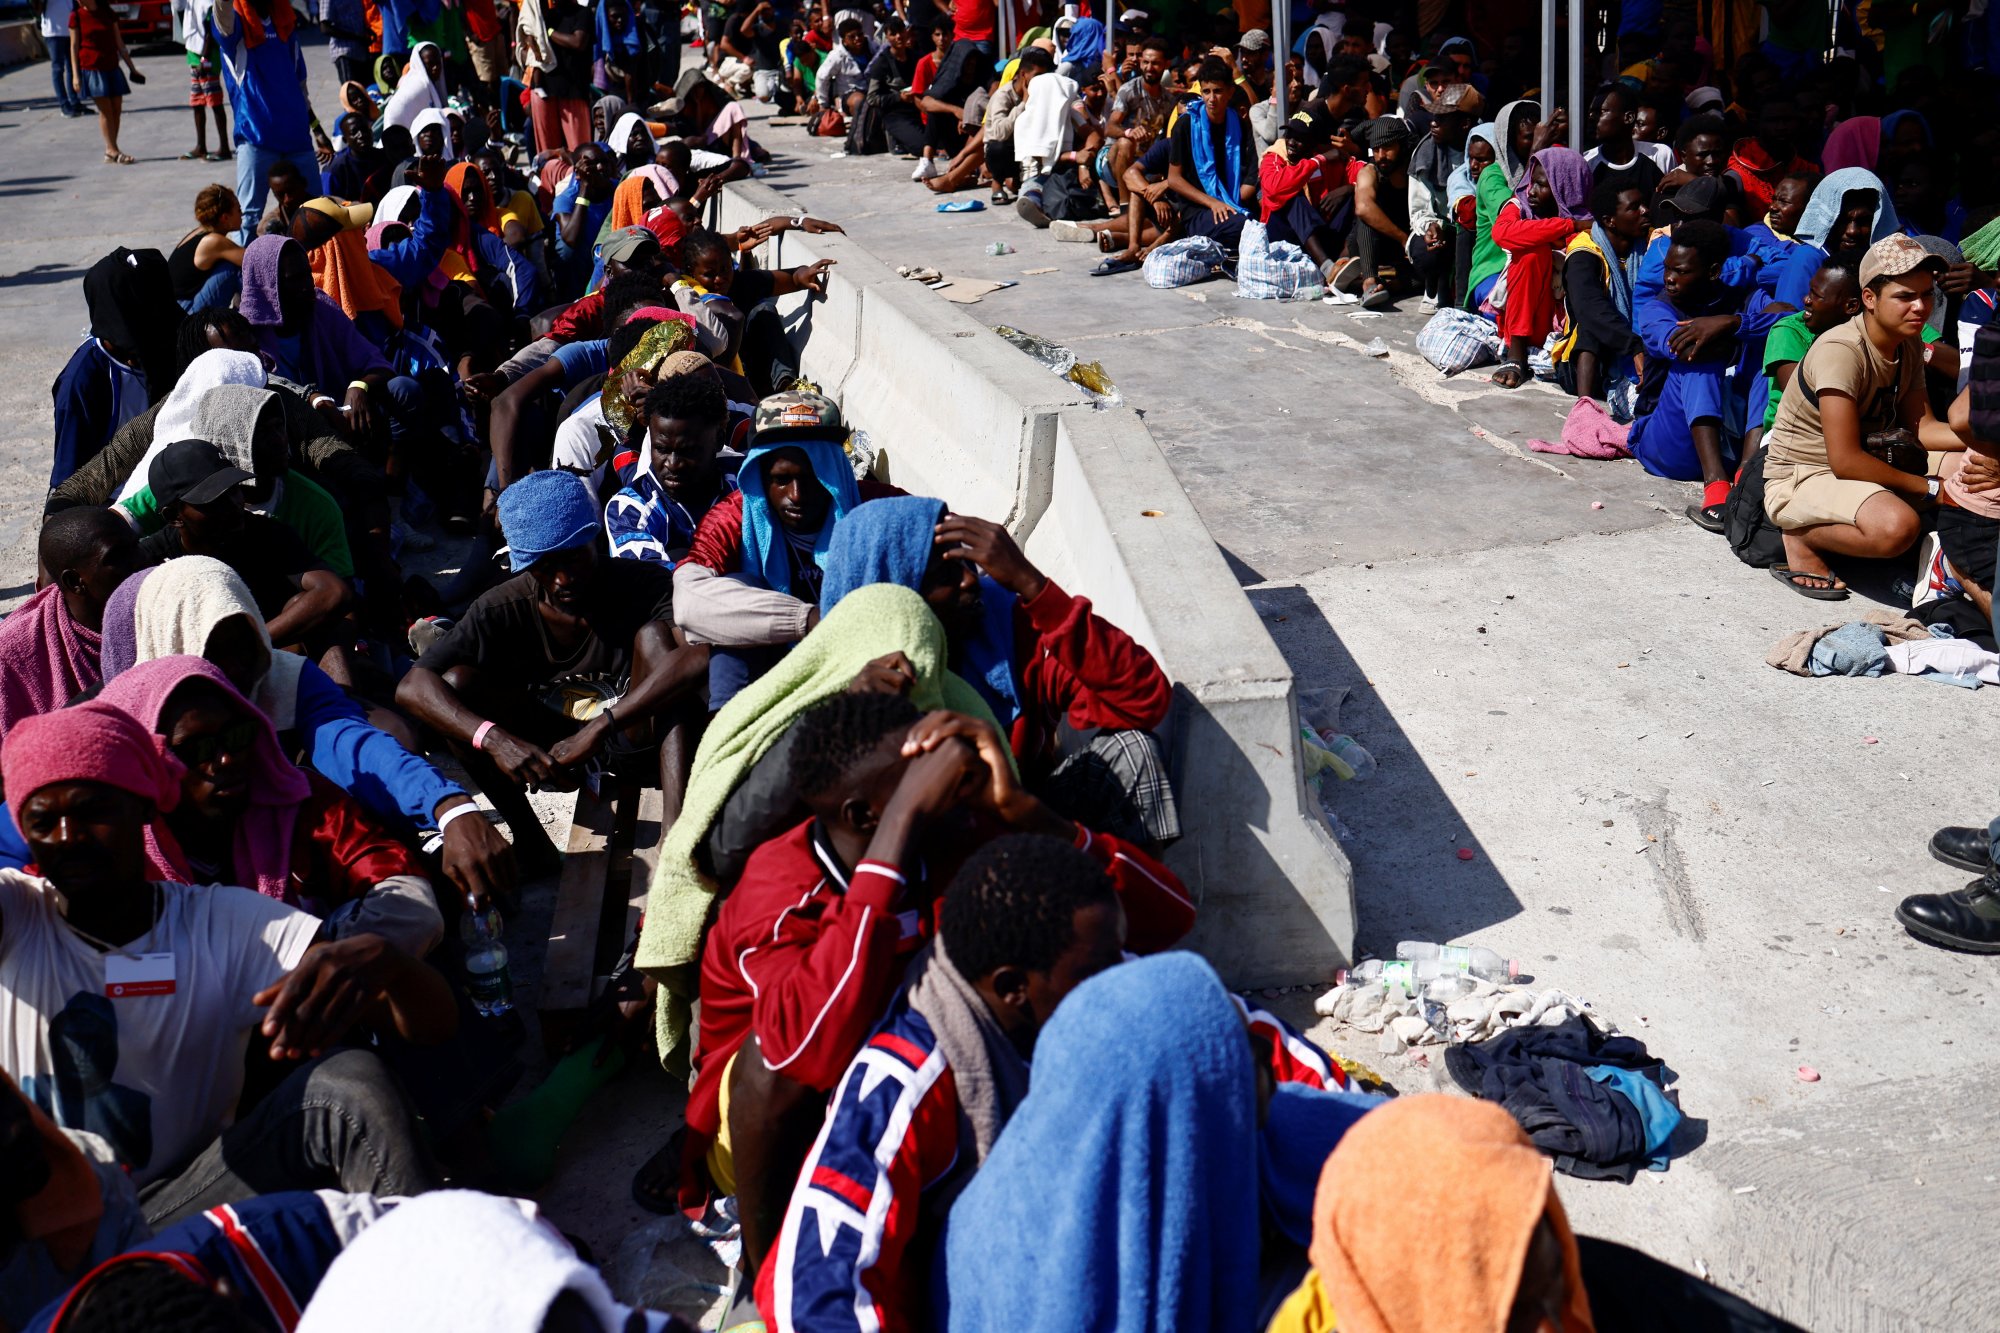 Μεταναστευτικό: Νέα μέτρα ενέκρινε η κυβέρνηση Μελόνι